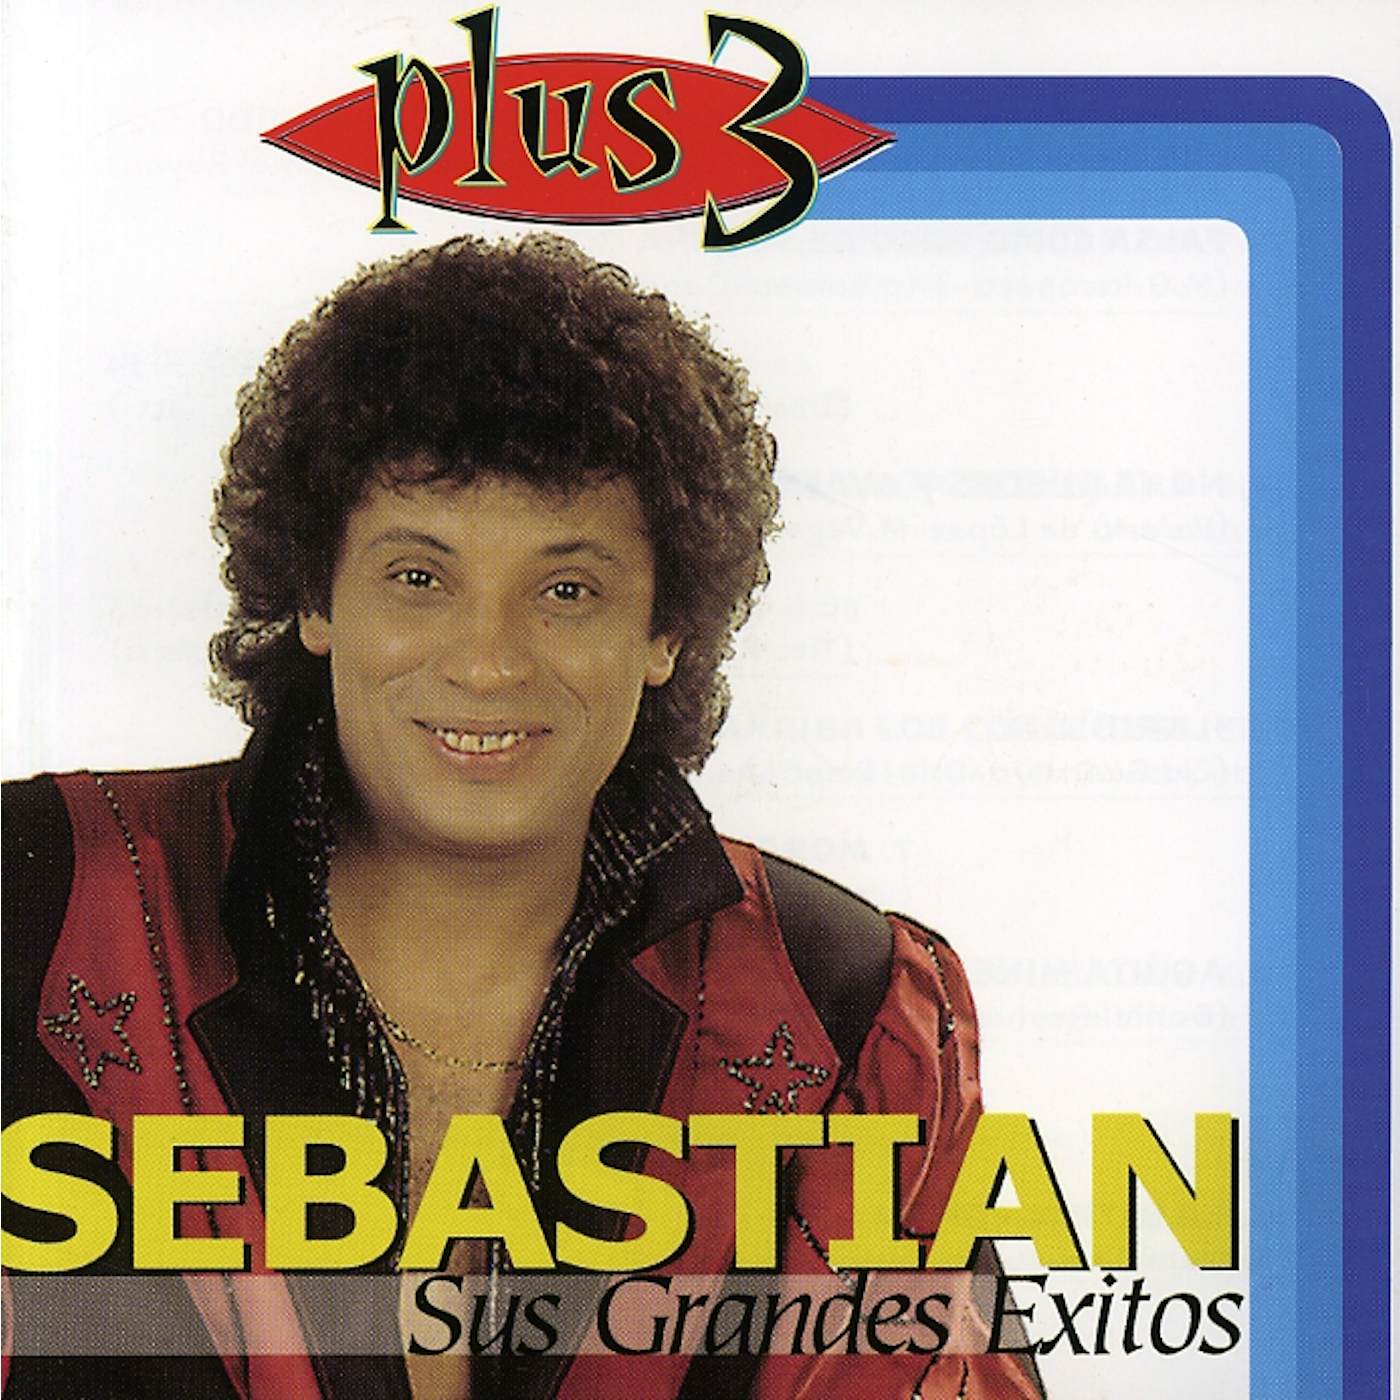 SebastiAn SUS GRANDES EXITOS CD